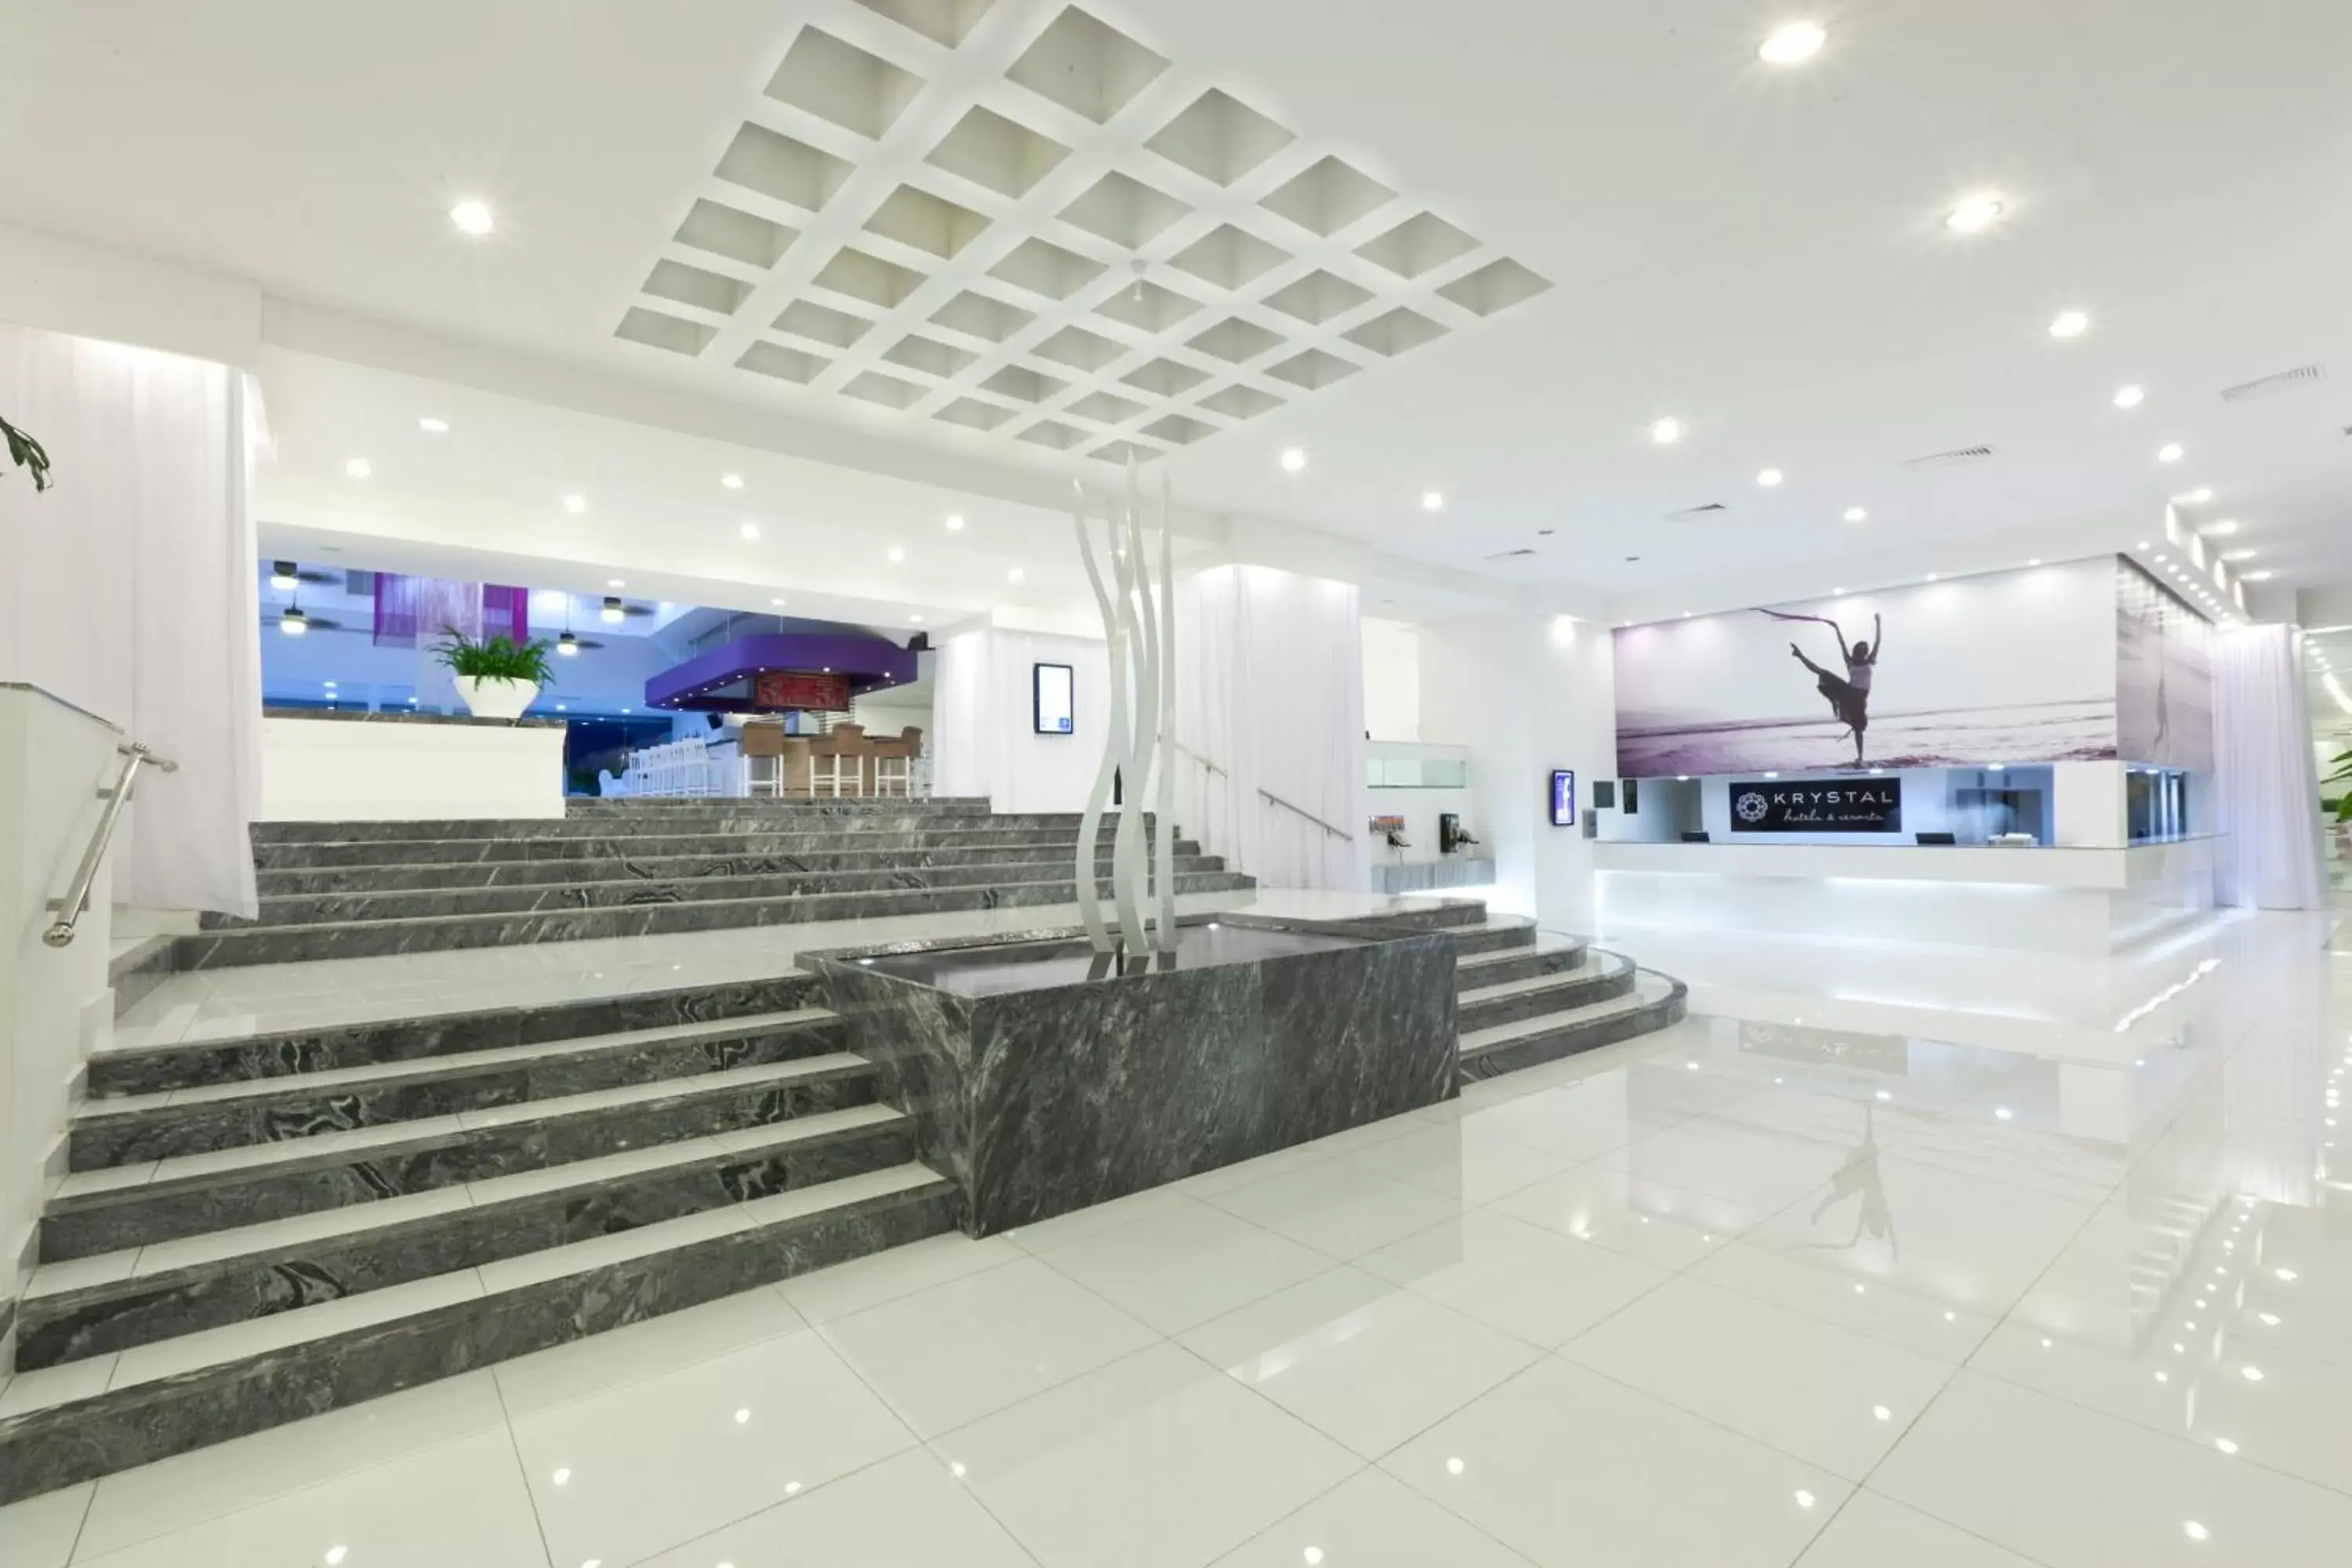 Lobby or reception, Lobby/Reception in Krystal Cancun